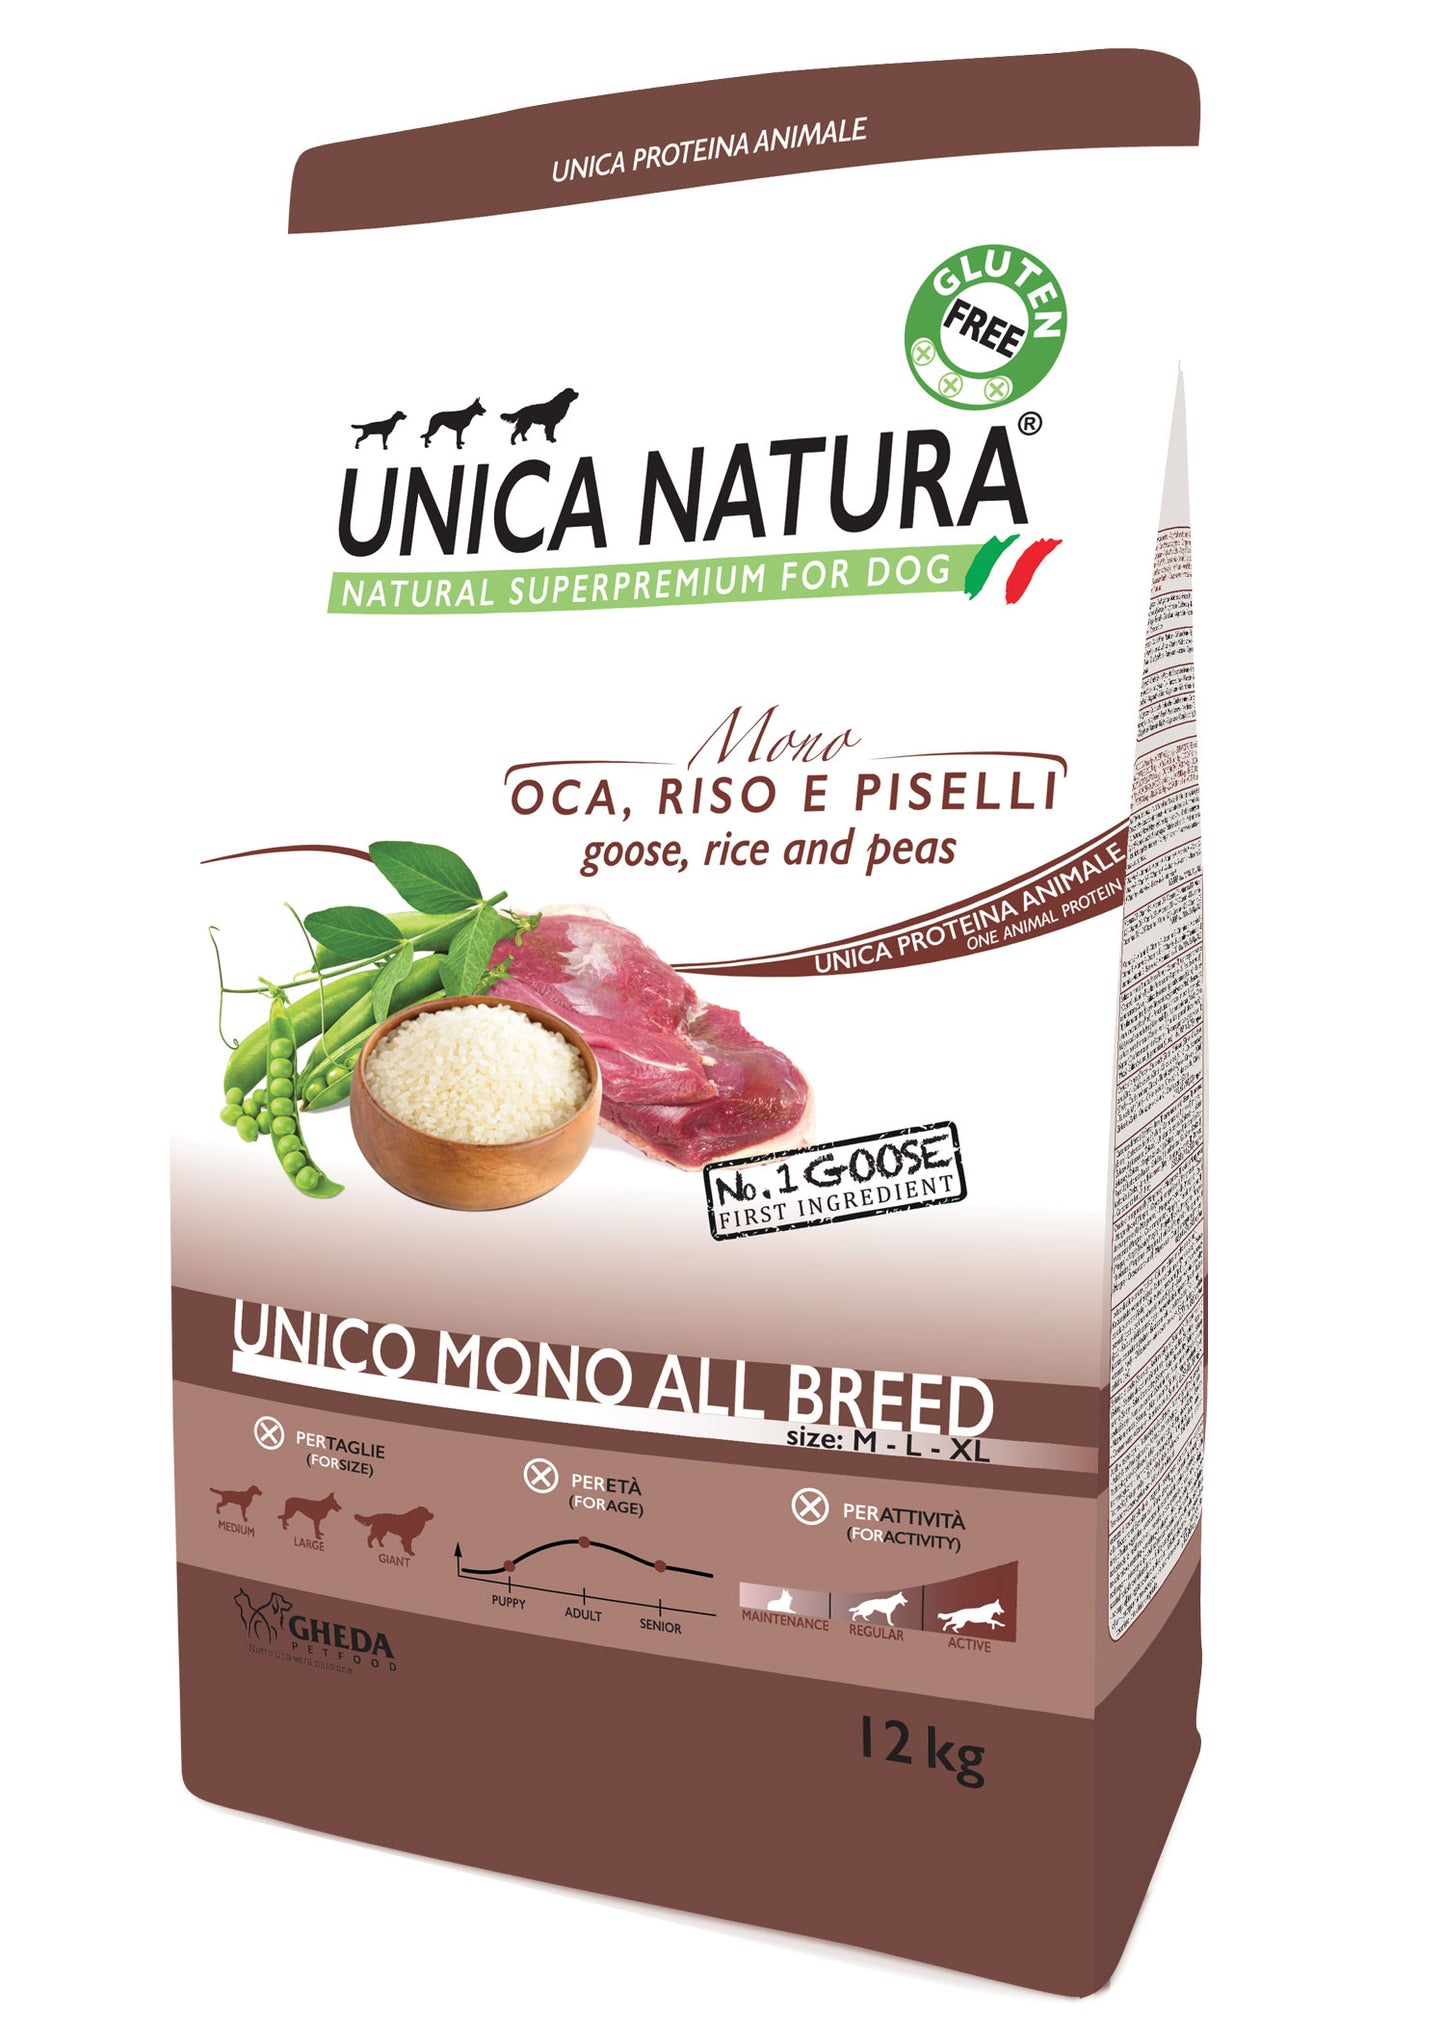 Unico All breed mono - Oca 12kg